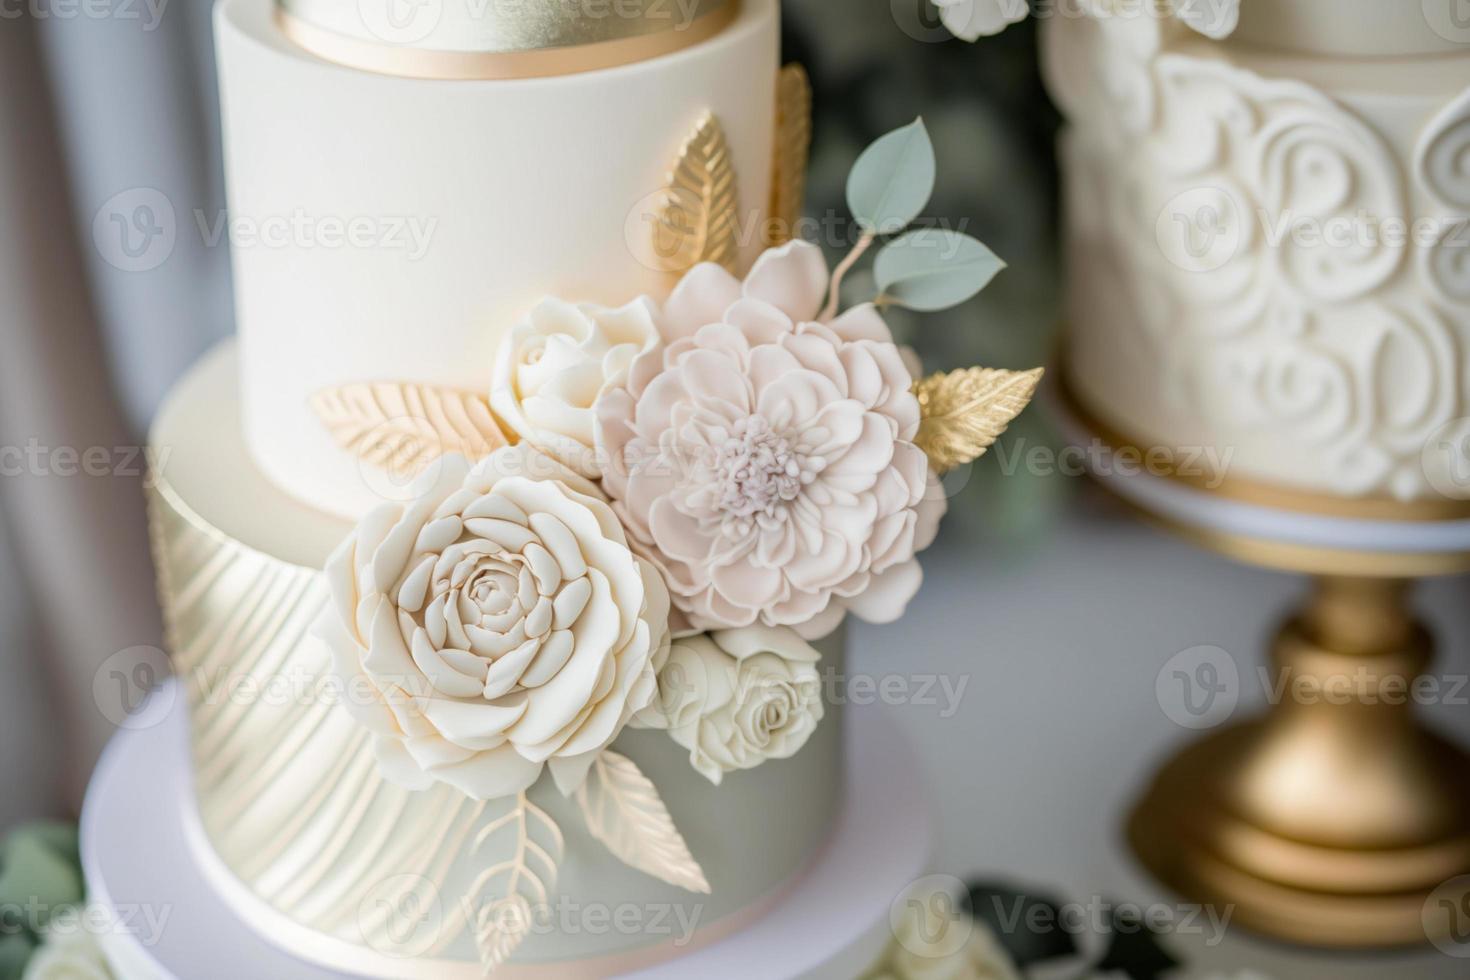 mariage gâteau est le traditionnel gâteau servi à mariage des soirées après le principale repas. dans moderne occidental culture, le gâteau est d'habitude sur afficher et servi à invités pendant le réception. photo